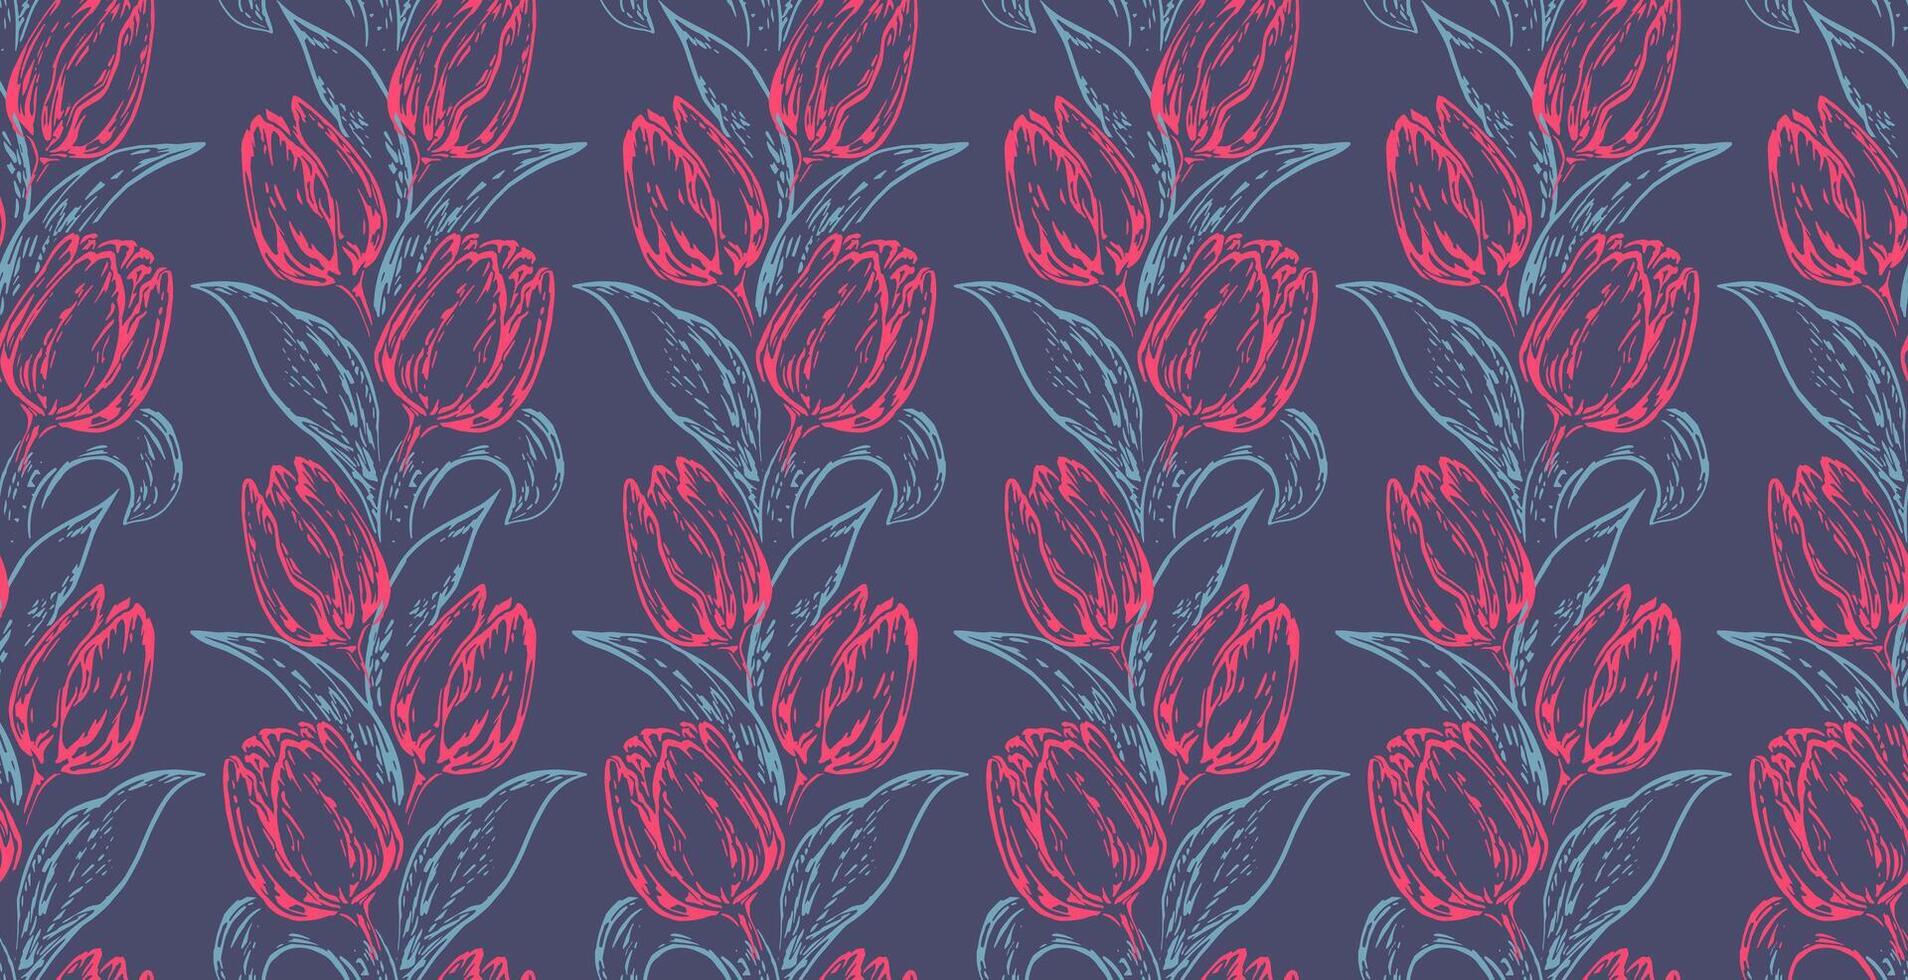 artístico estilizado formas galhos tulipas com folha entrelaçados dentro uma desatado padronizar. vetor desenhado ilustração vermelho linhas esboços flores e azul folha. abstrato simples botânico em azul fundo.